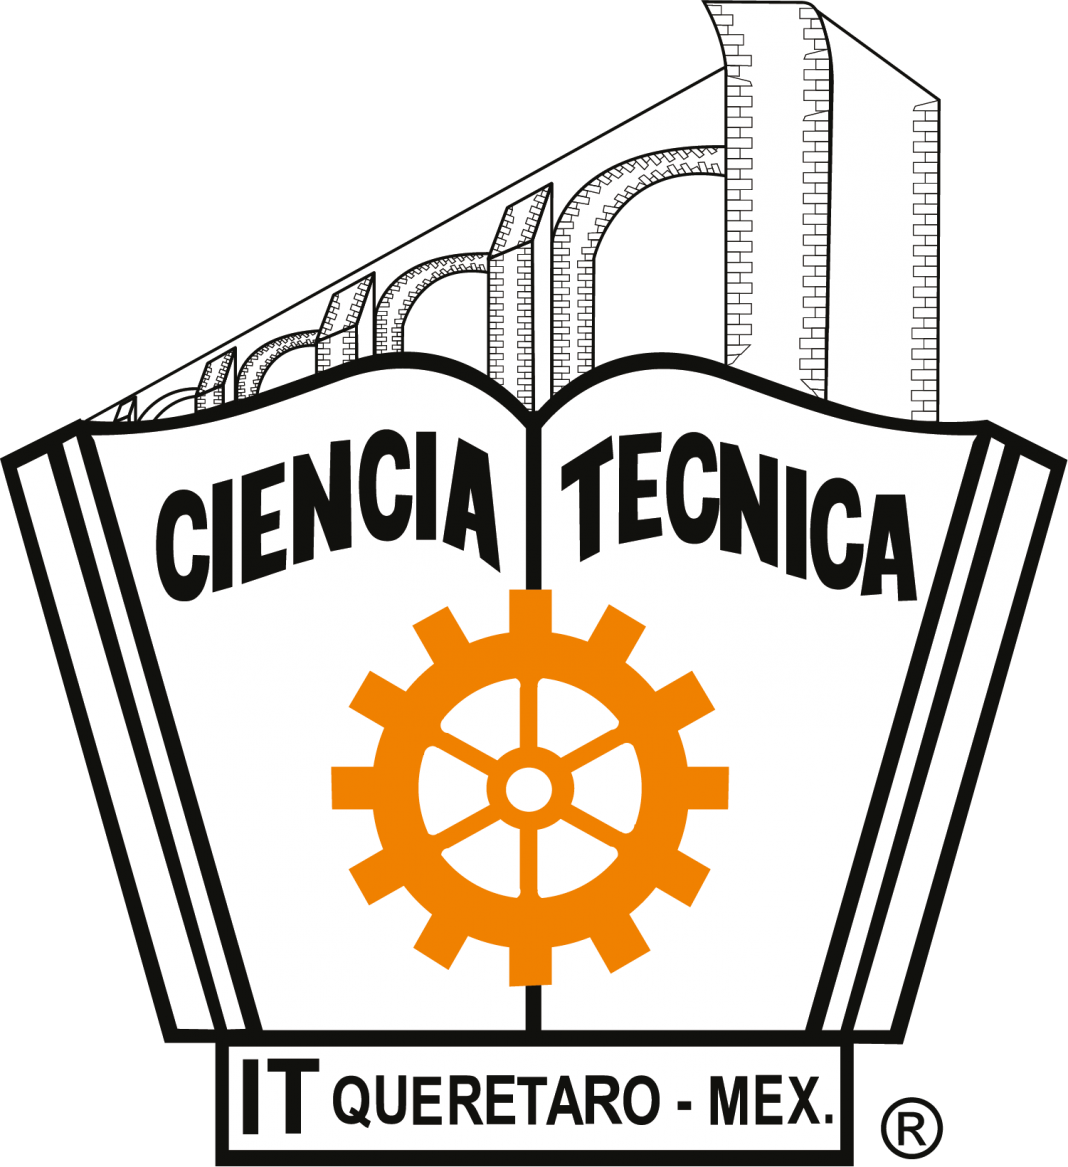 Technological Institute of Querétaro logo